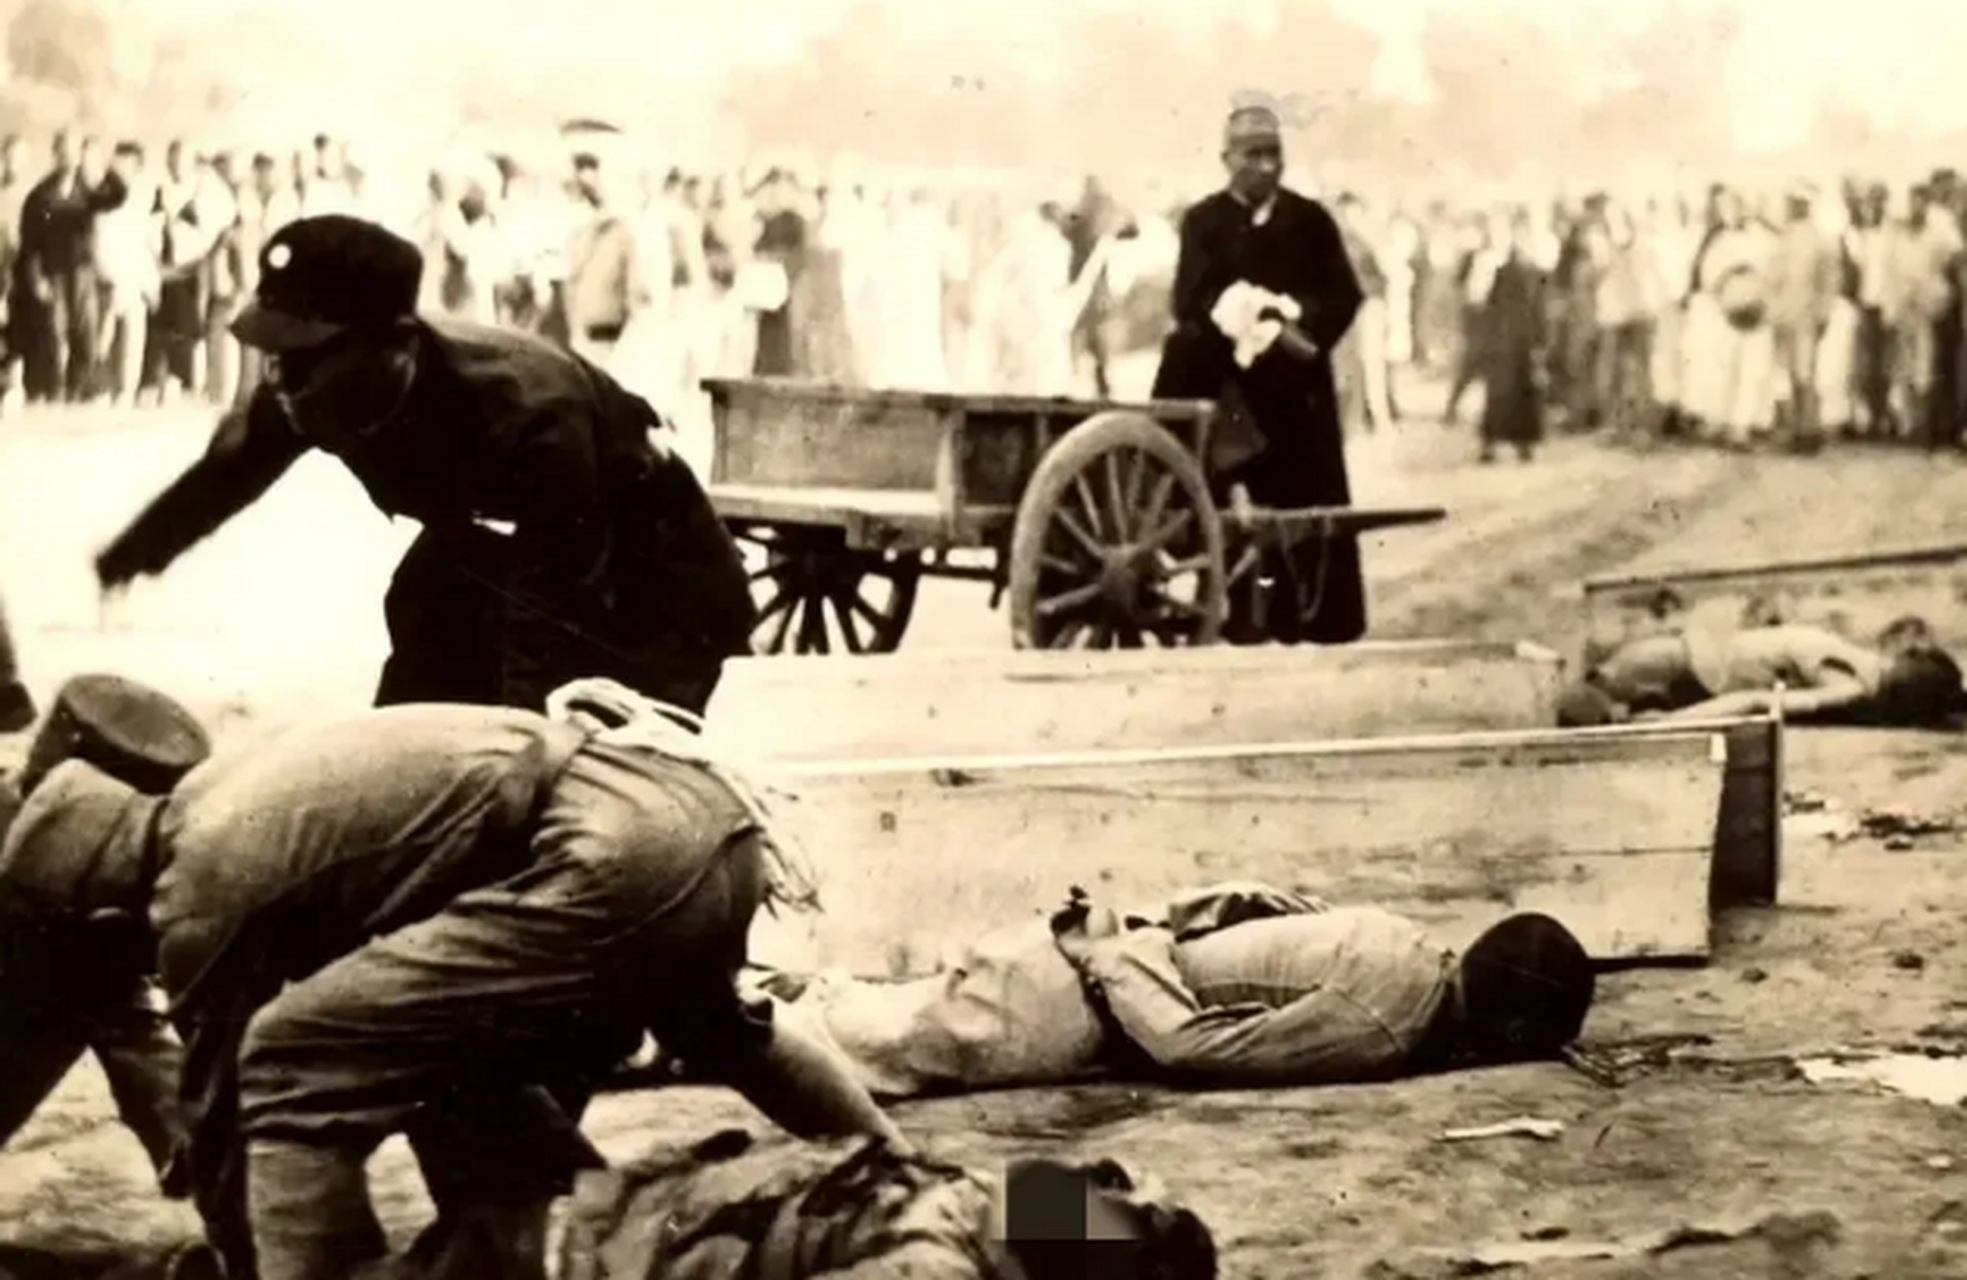 这是民国时期,郊外刑场,几名被枪毙的毒贩,照片中的他们横七竖八的躺